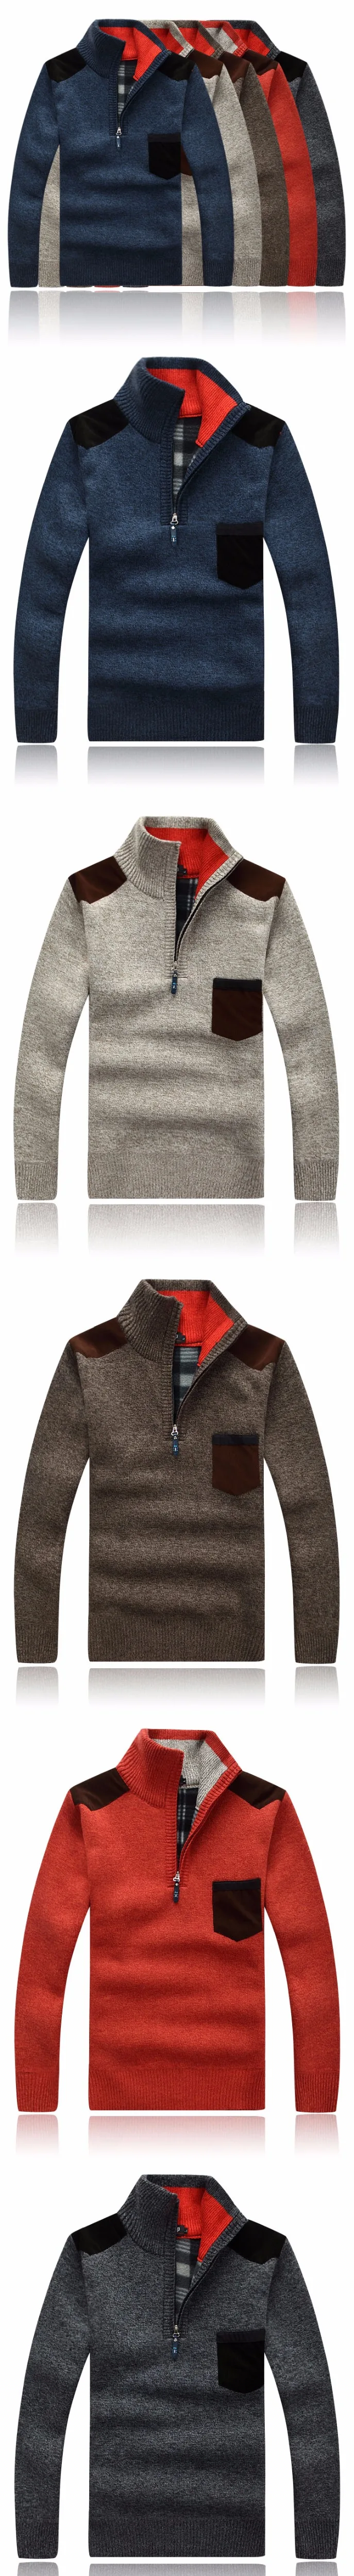 Шерстяной мужской свитер кашемировый толстый свитер мужской модный свитер нагрудный карман стоячий воротник молния ArmyGreen пуловер Мужской